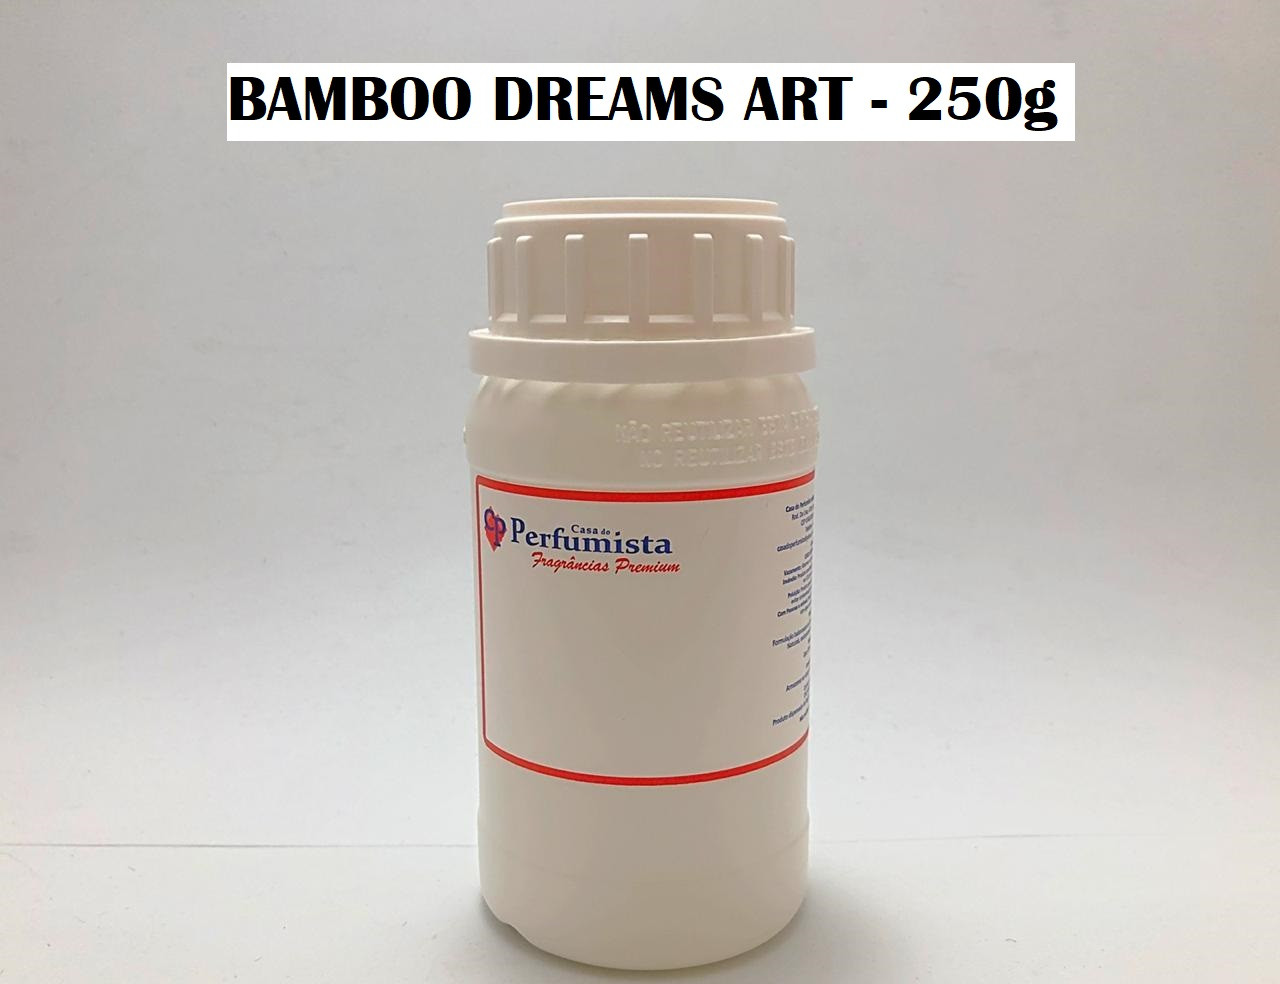 BAMBOO DREAMS ART - 250g - Inspiração: M. Martan